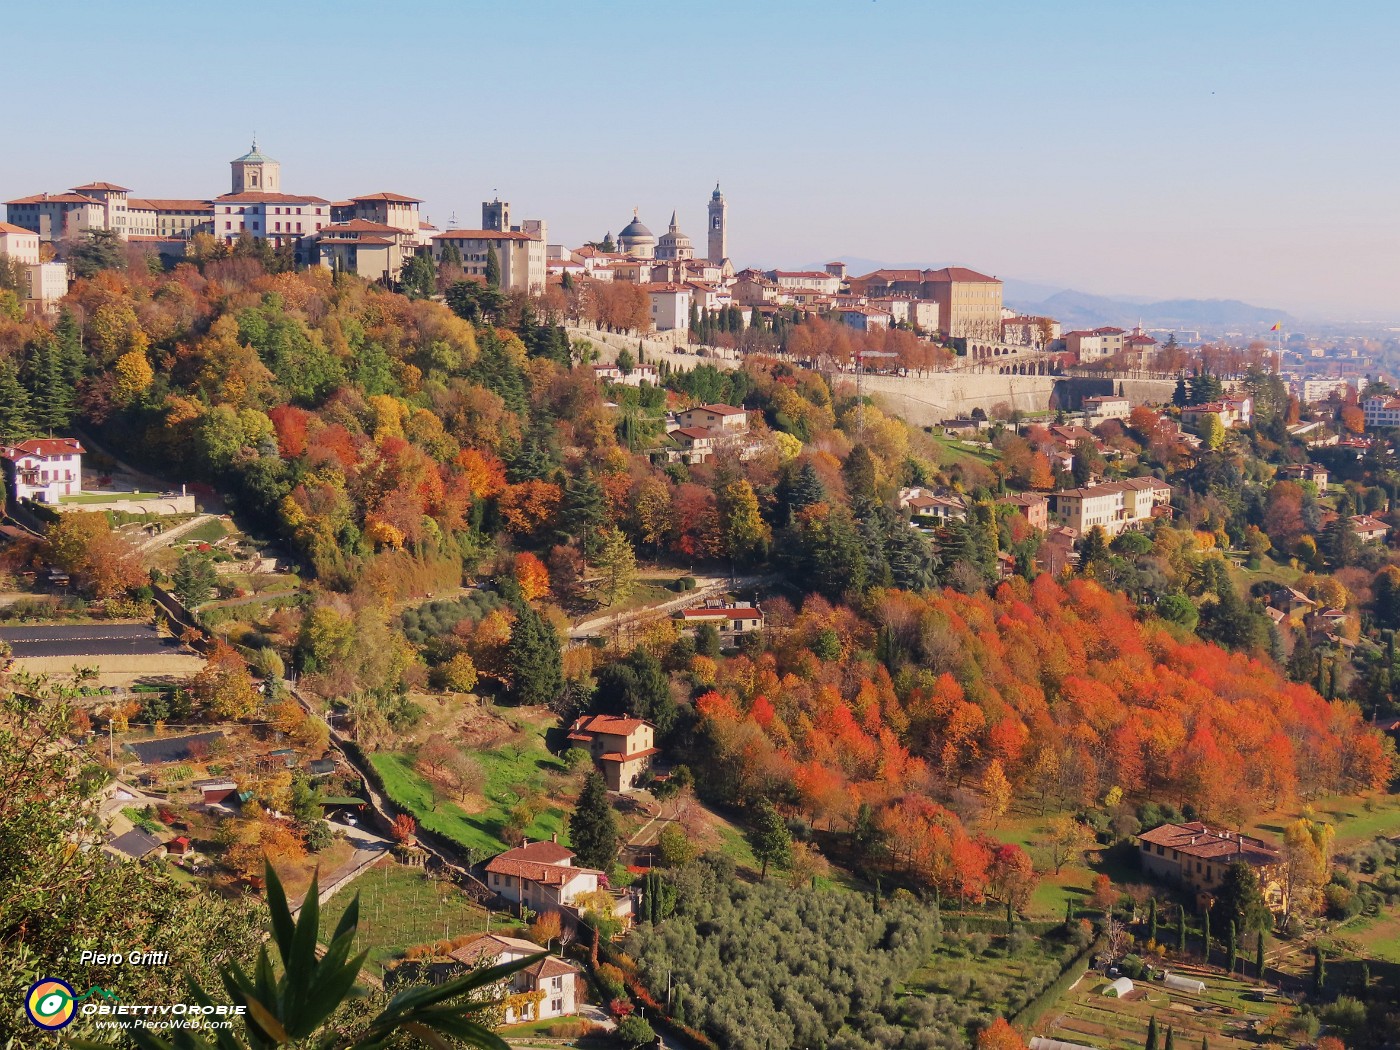 02 Da via Sudorno splendida vista su Bergamo Alta colorata d'autnno inoltrato.JPG